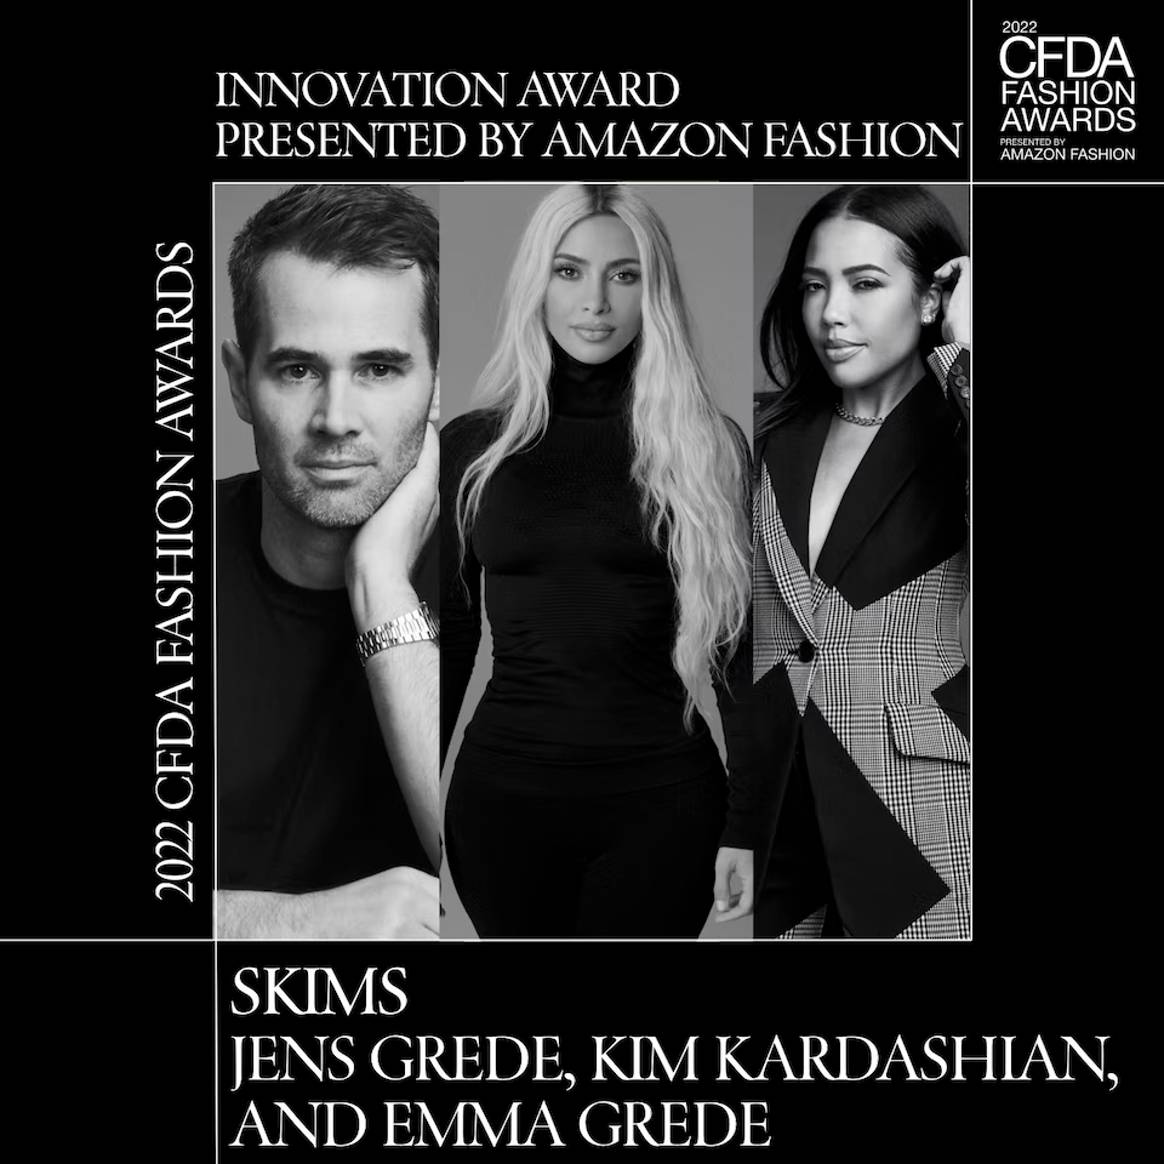 Image: CFDA, Amazon Fashion Innovation Award - Skims